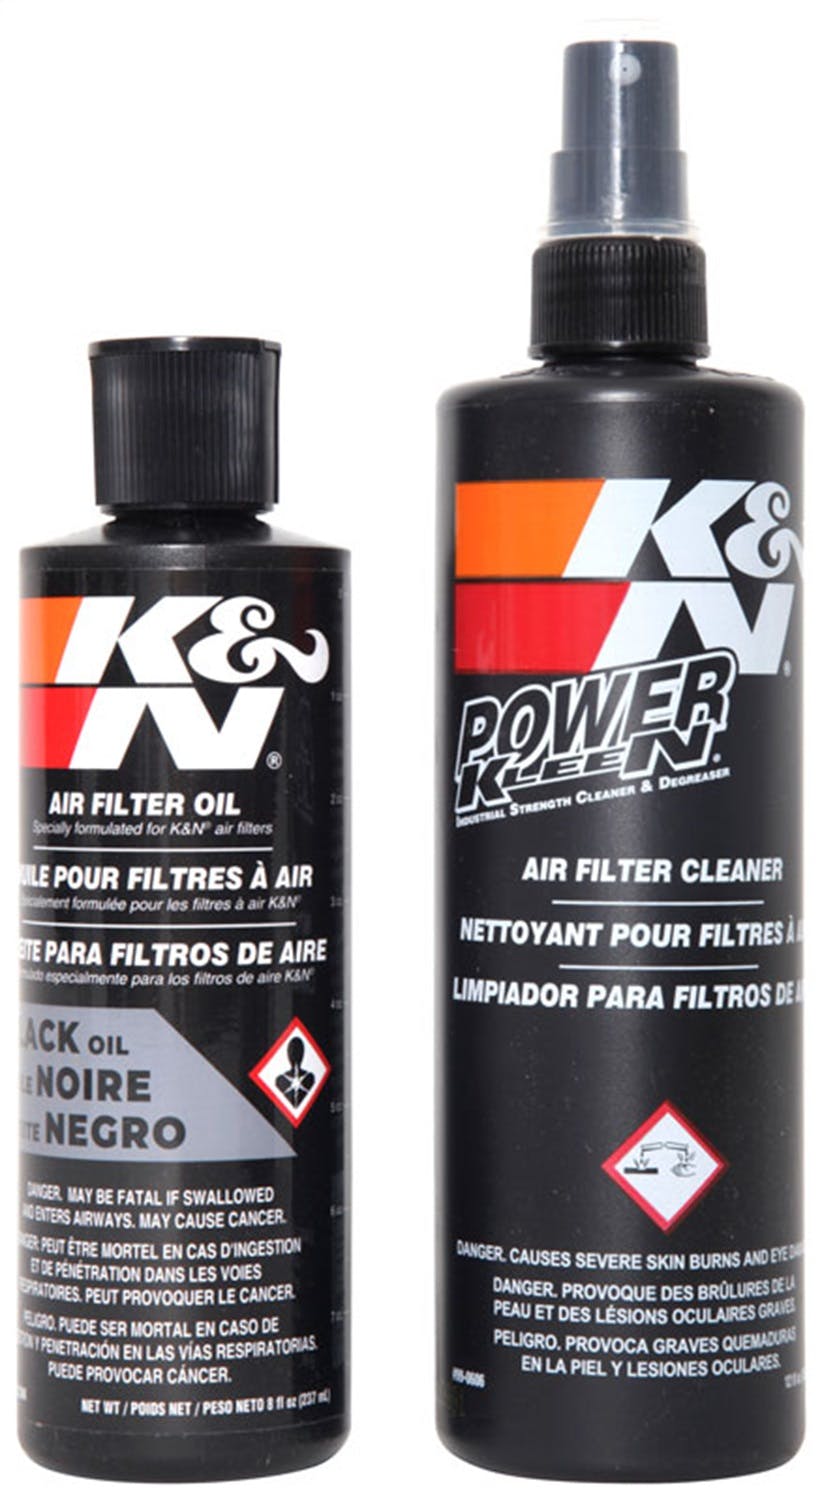 K&N 99-5050BK Filter Care Service Kit - Squeeze Black